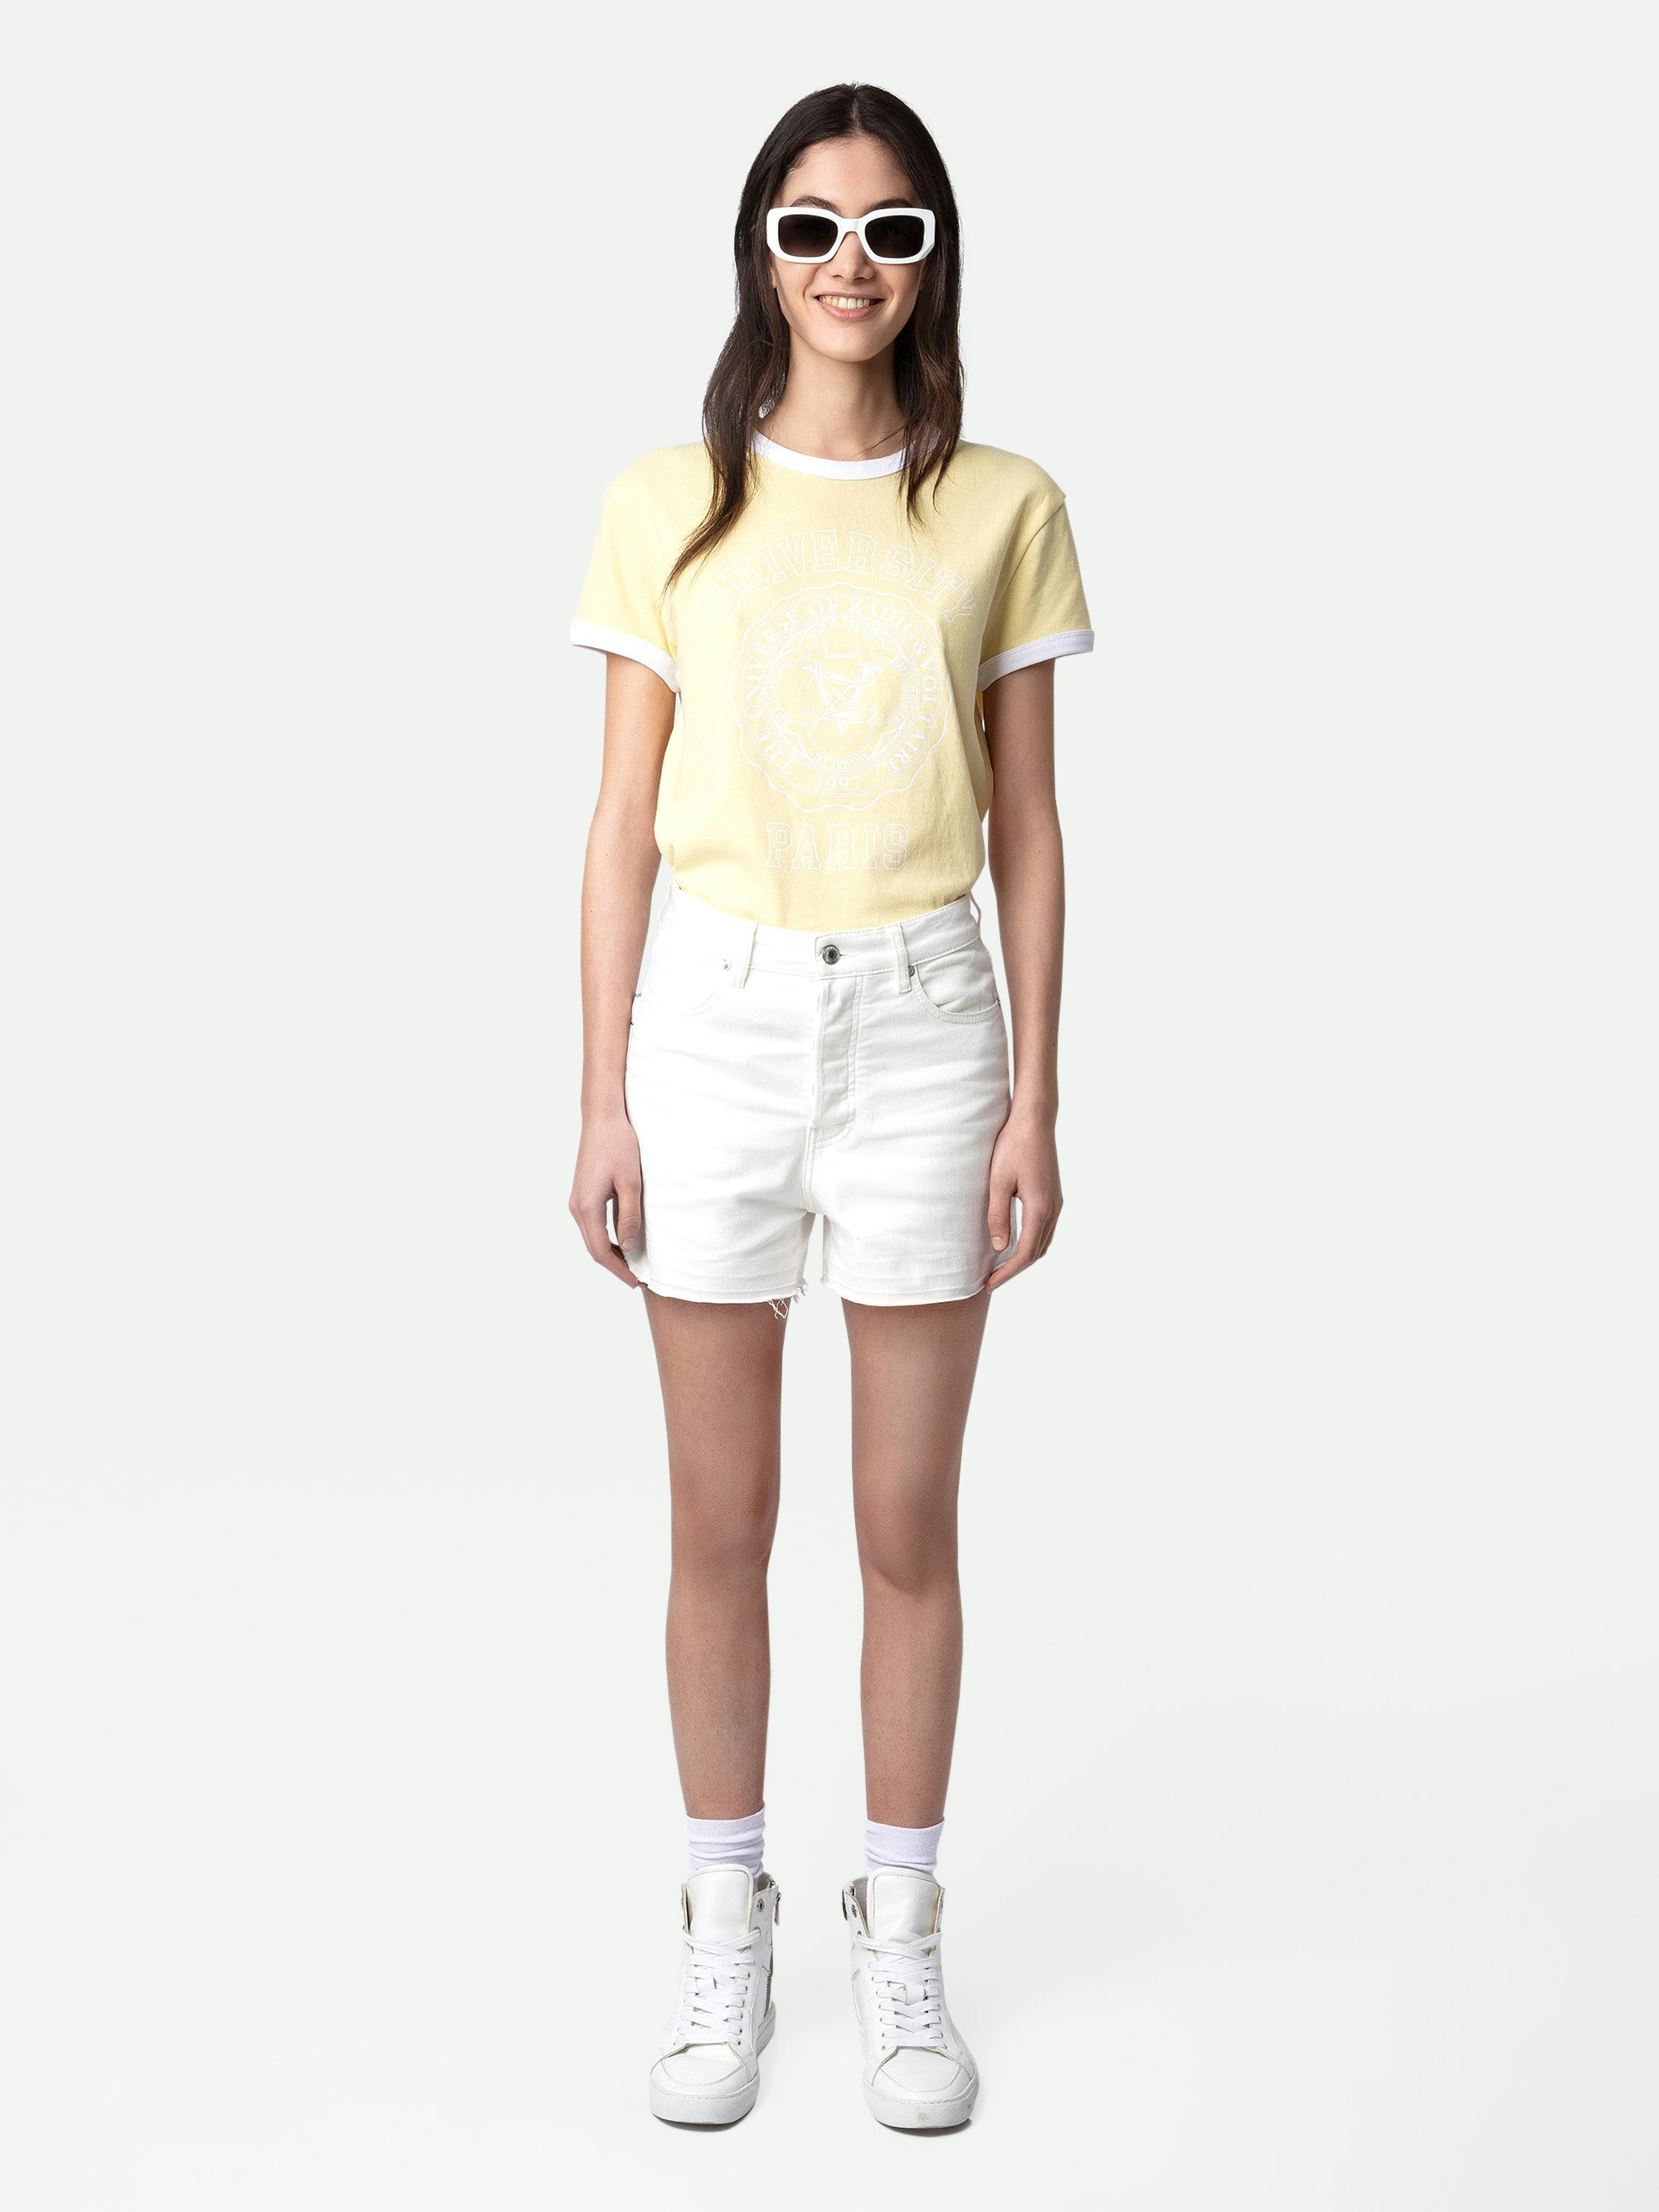 Camiseta Walk University - Camiseta de algodón en color amarillo claro con mangas cortas, con motivo universitario y bordes de contraste.